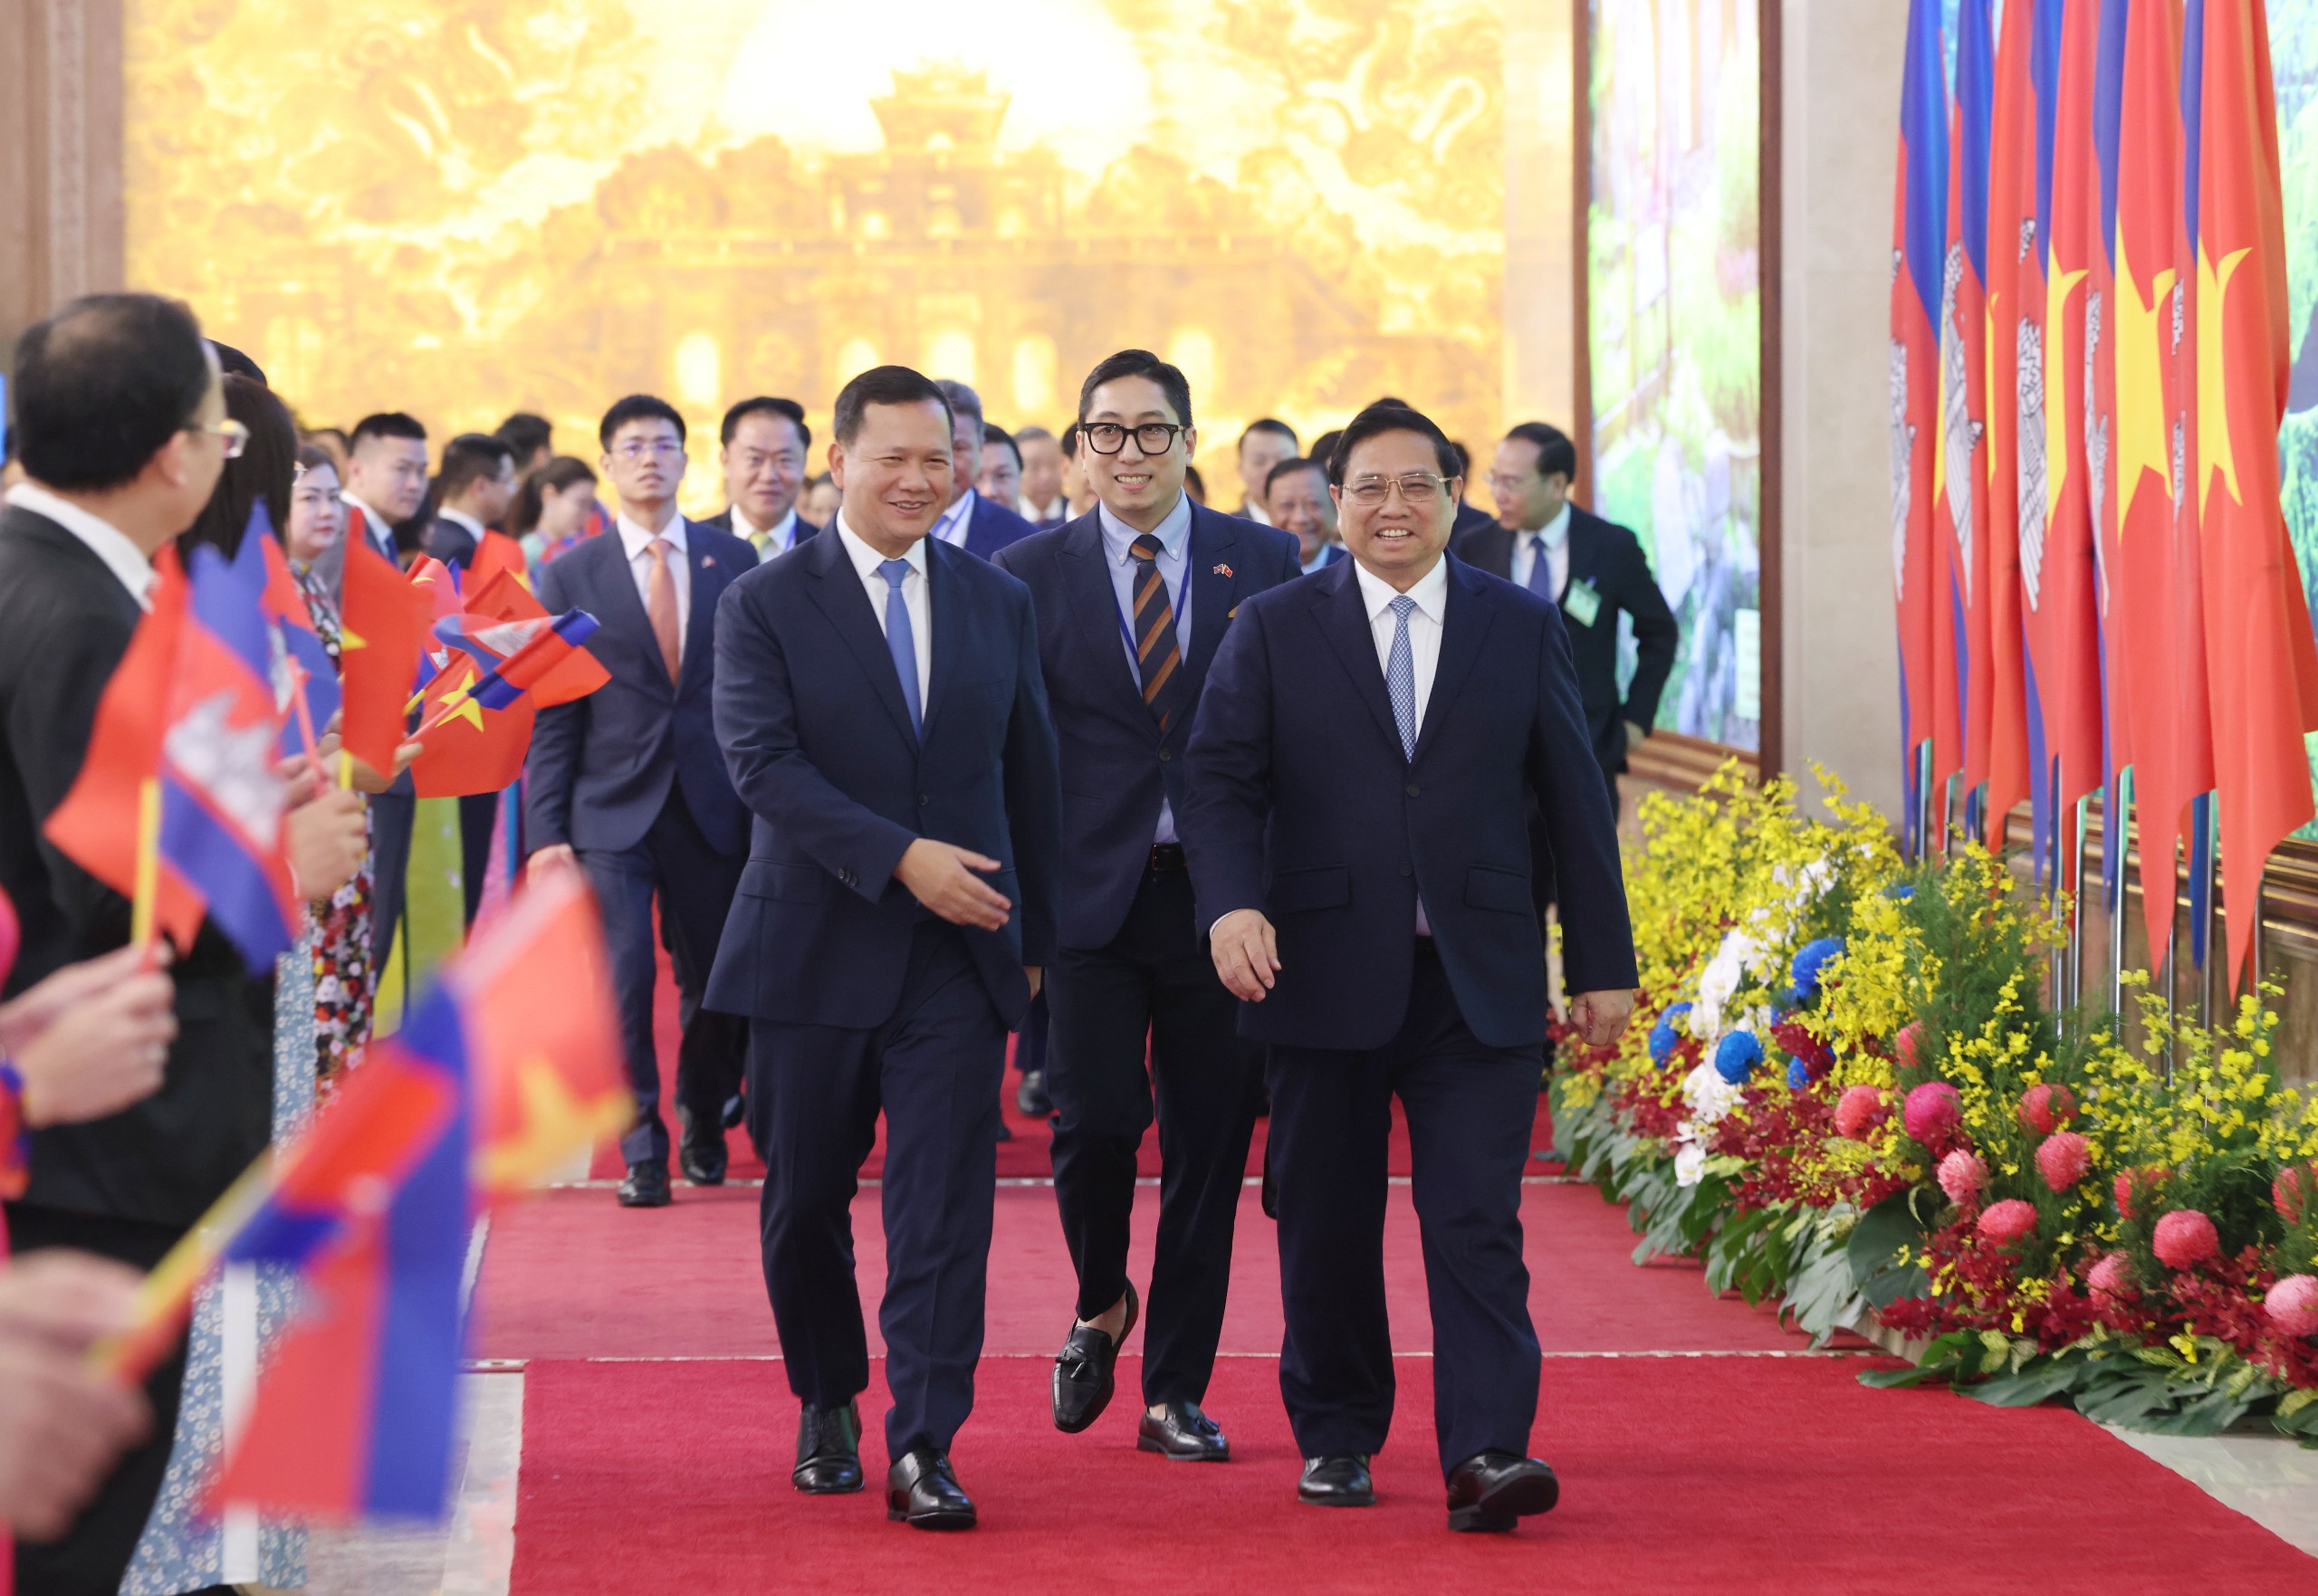 Việt Nam và Campuchia ký kết ba văn kiện hợp tác song phương